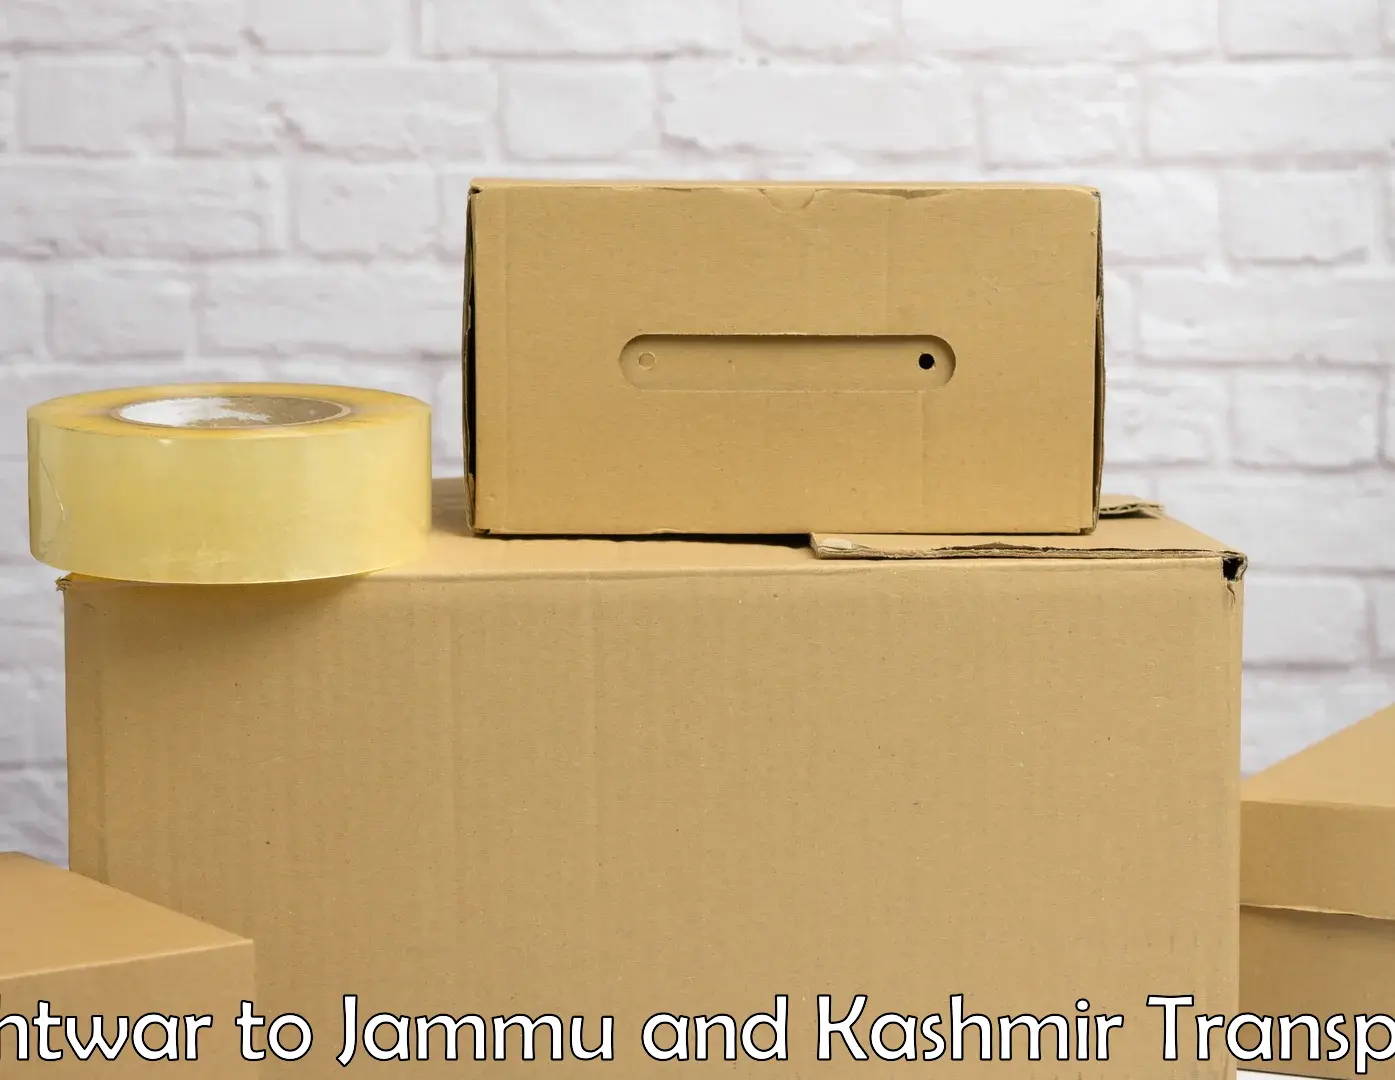 Part load transport service in India Kishtwar to Anantnag